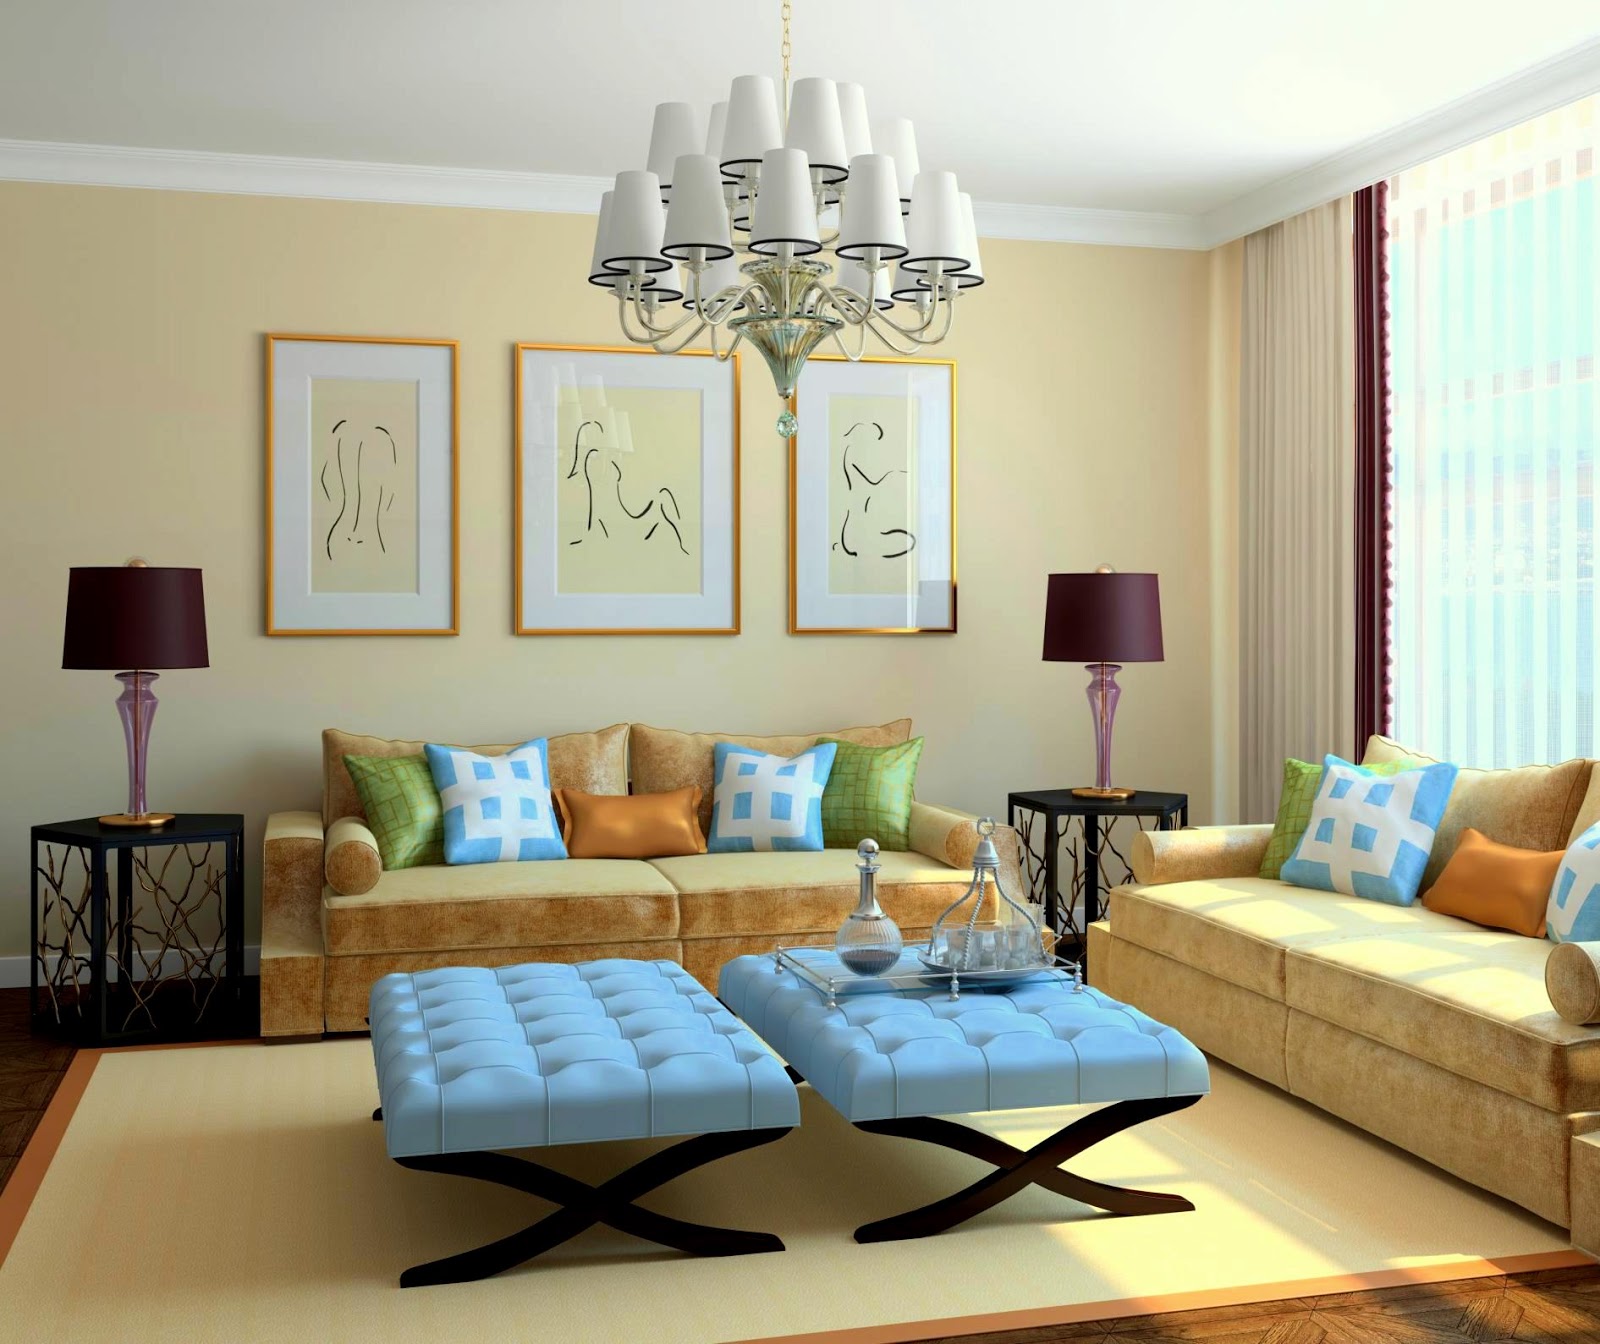 Dekorasi Ruang Tamu Rumah Teres Setingkat Dengan Hiasan Furnished Vs Unfurnished Room 1600x1344 Wallpaper Teahub Io